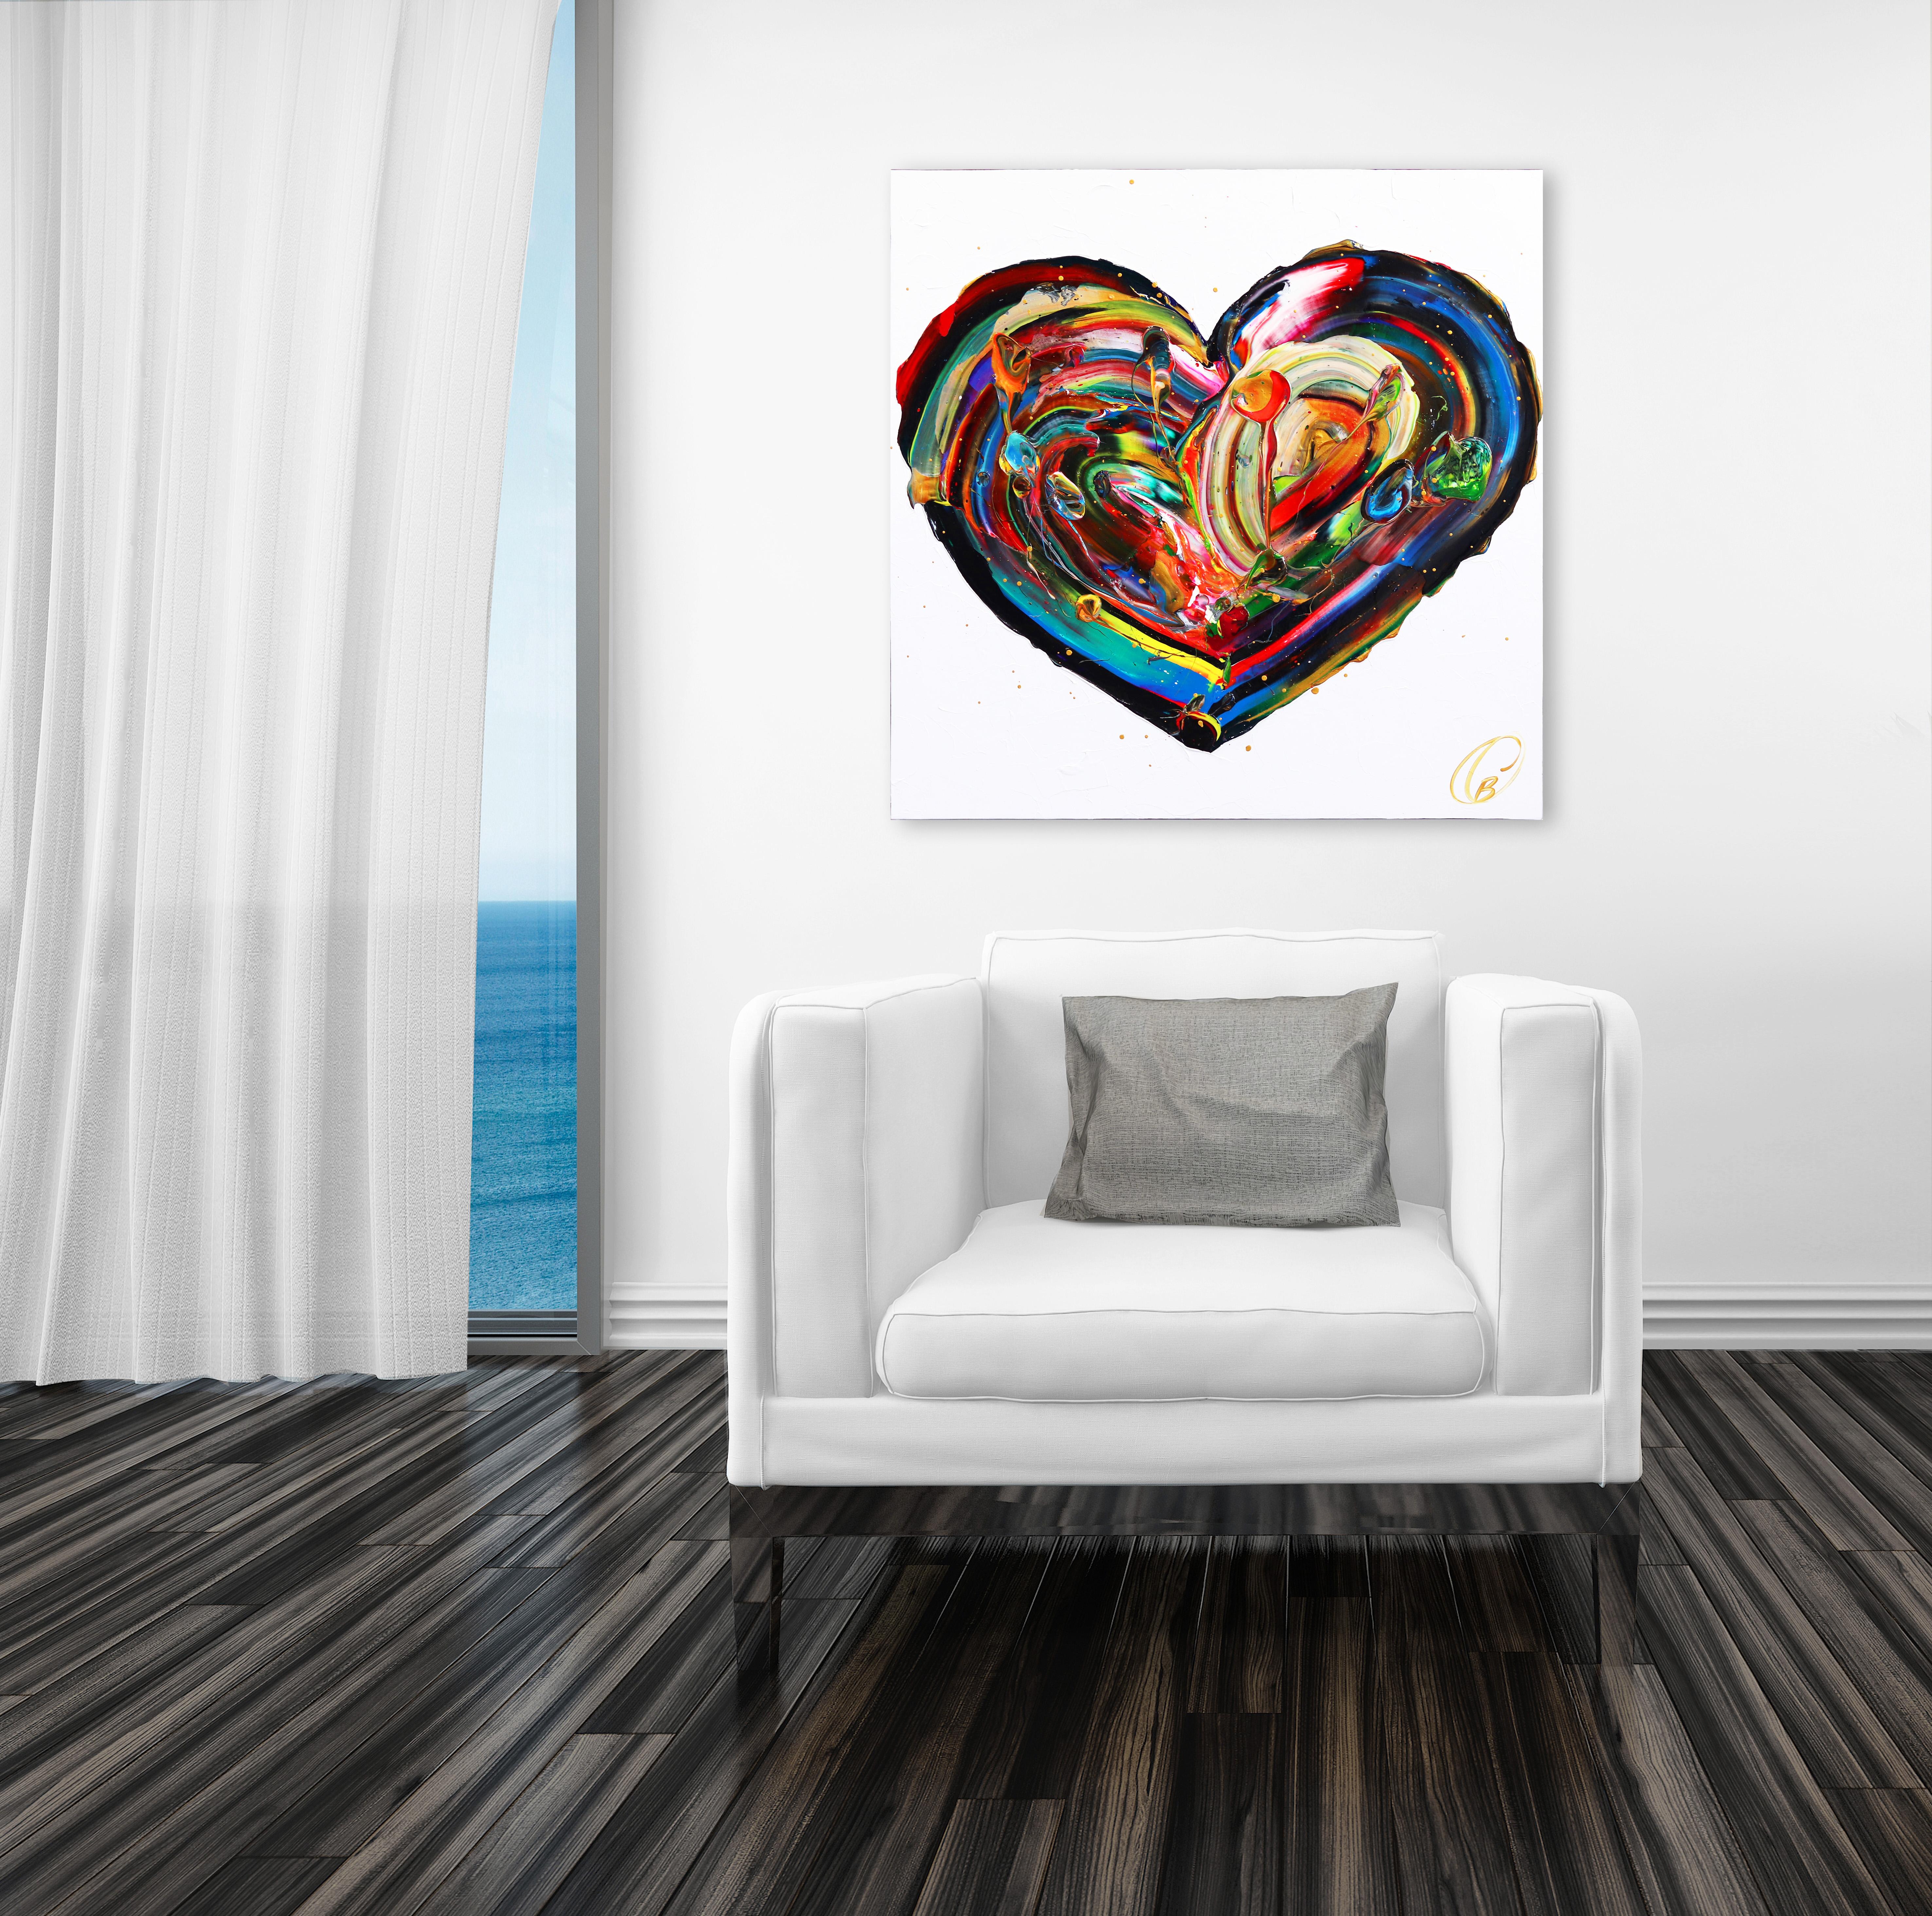 Love Wins - Impasto Thick Paint Original Colorful Heart Artwork (L'amour l'emporte - Peinture épaisse originale avec un coeur coloré) - Painting de Cynthia Coulombe Bégin